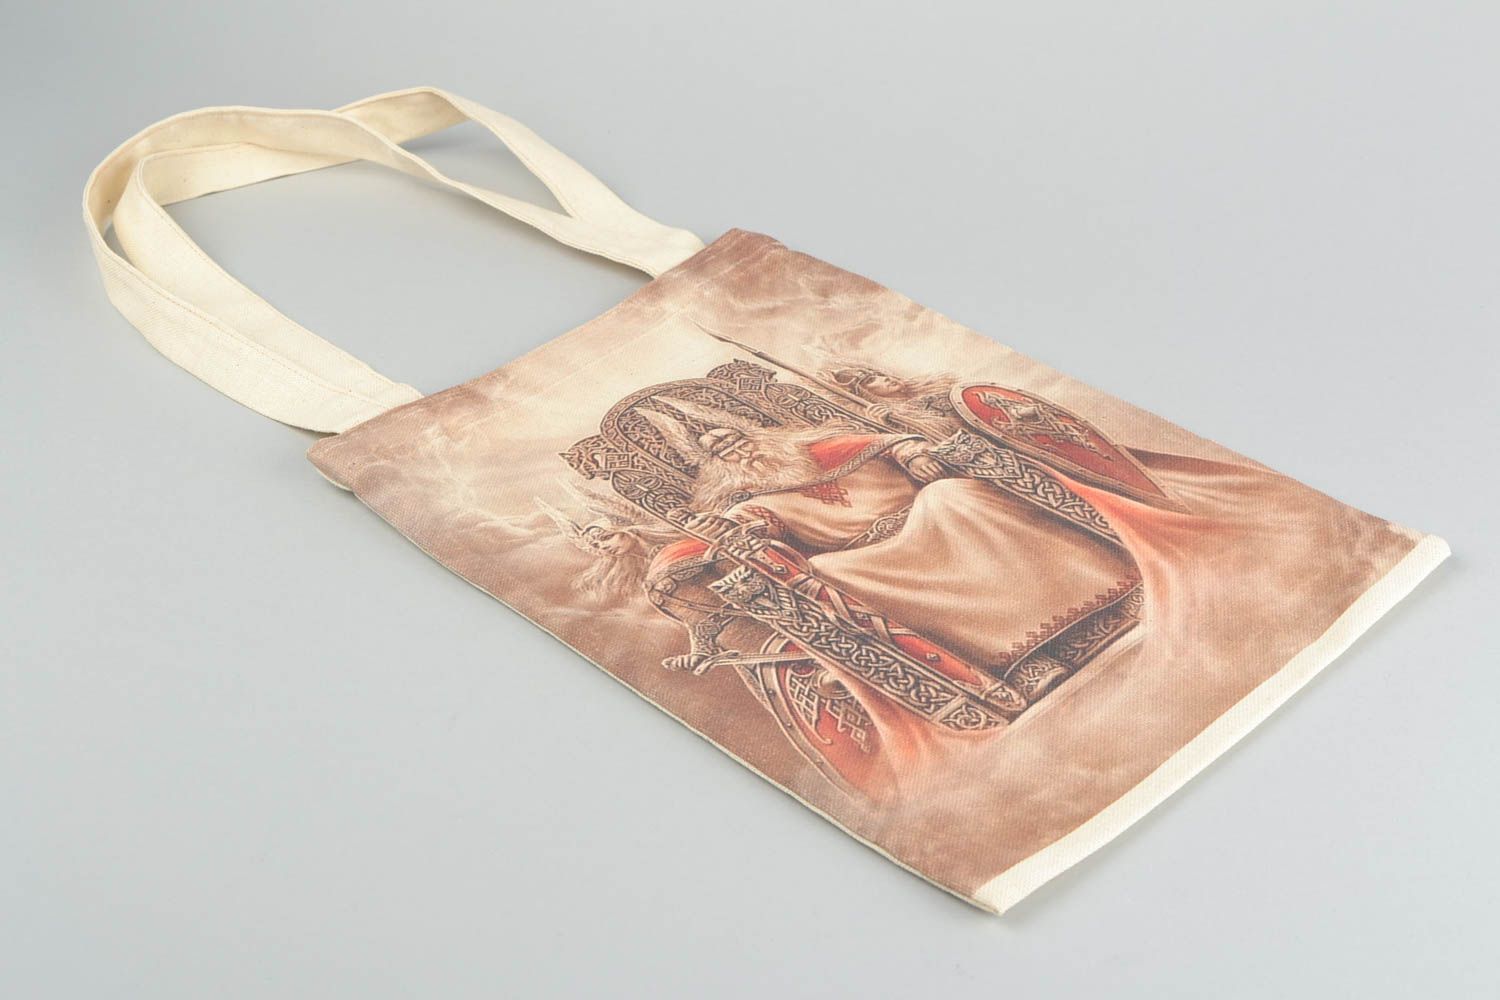 Öko Handtasche aus Stoff mit Print groß originell handgemacht Designer  foto 3